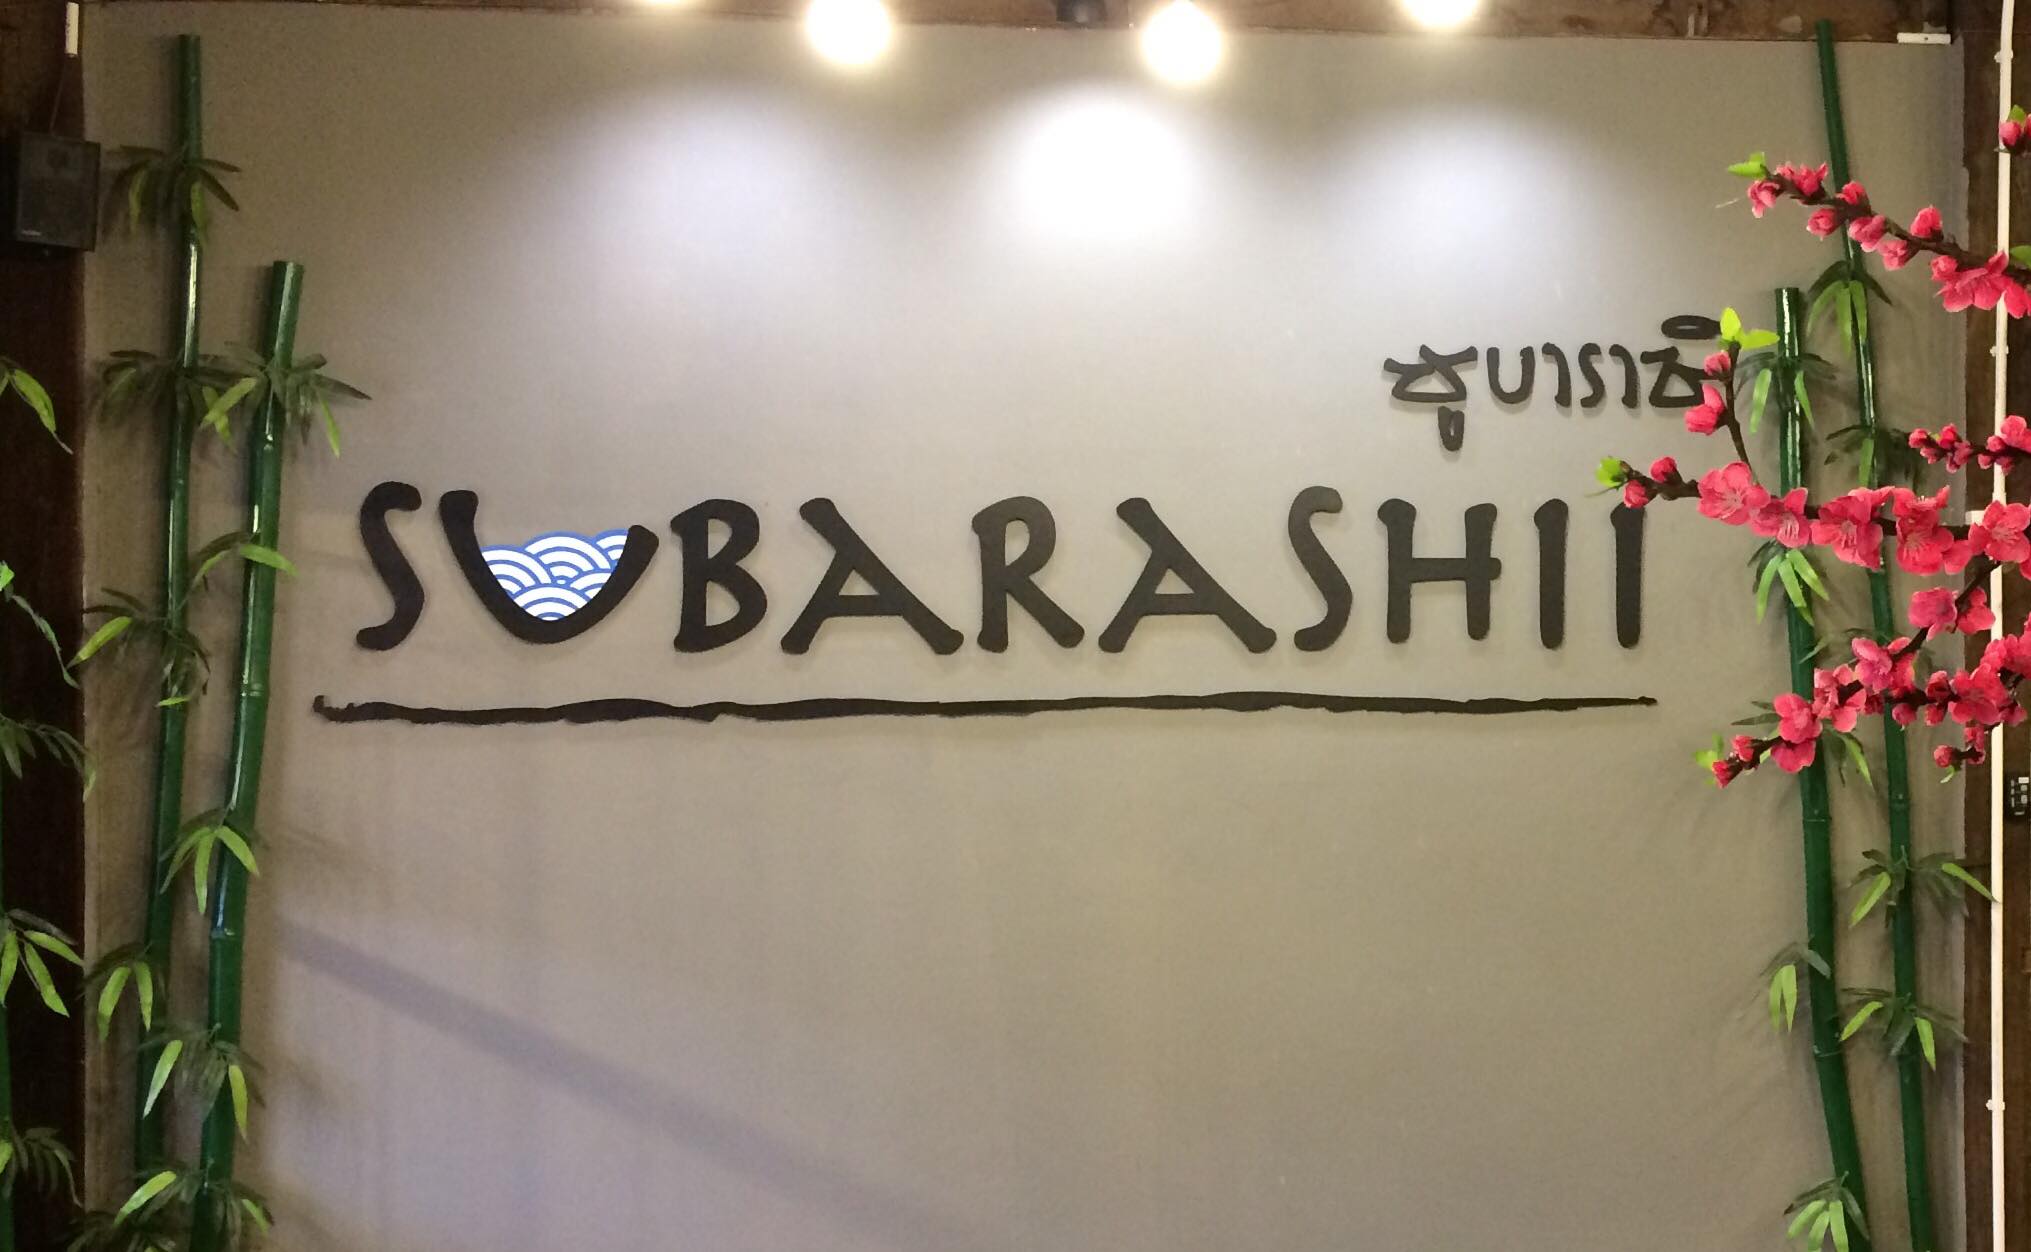   subarashii,ซูบาราชิ,ชะอวด,ชาบู,หม้อไฟเกาหลี,ร้านสวย,cafe